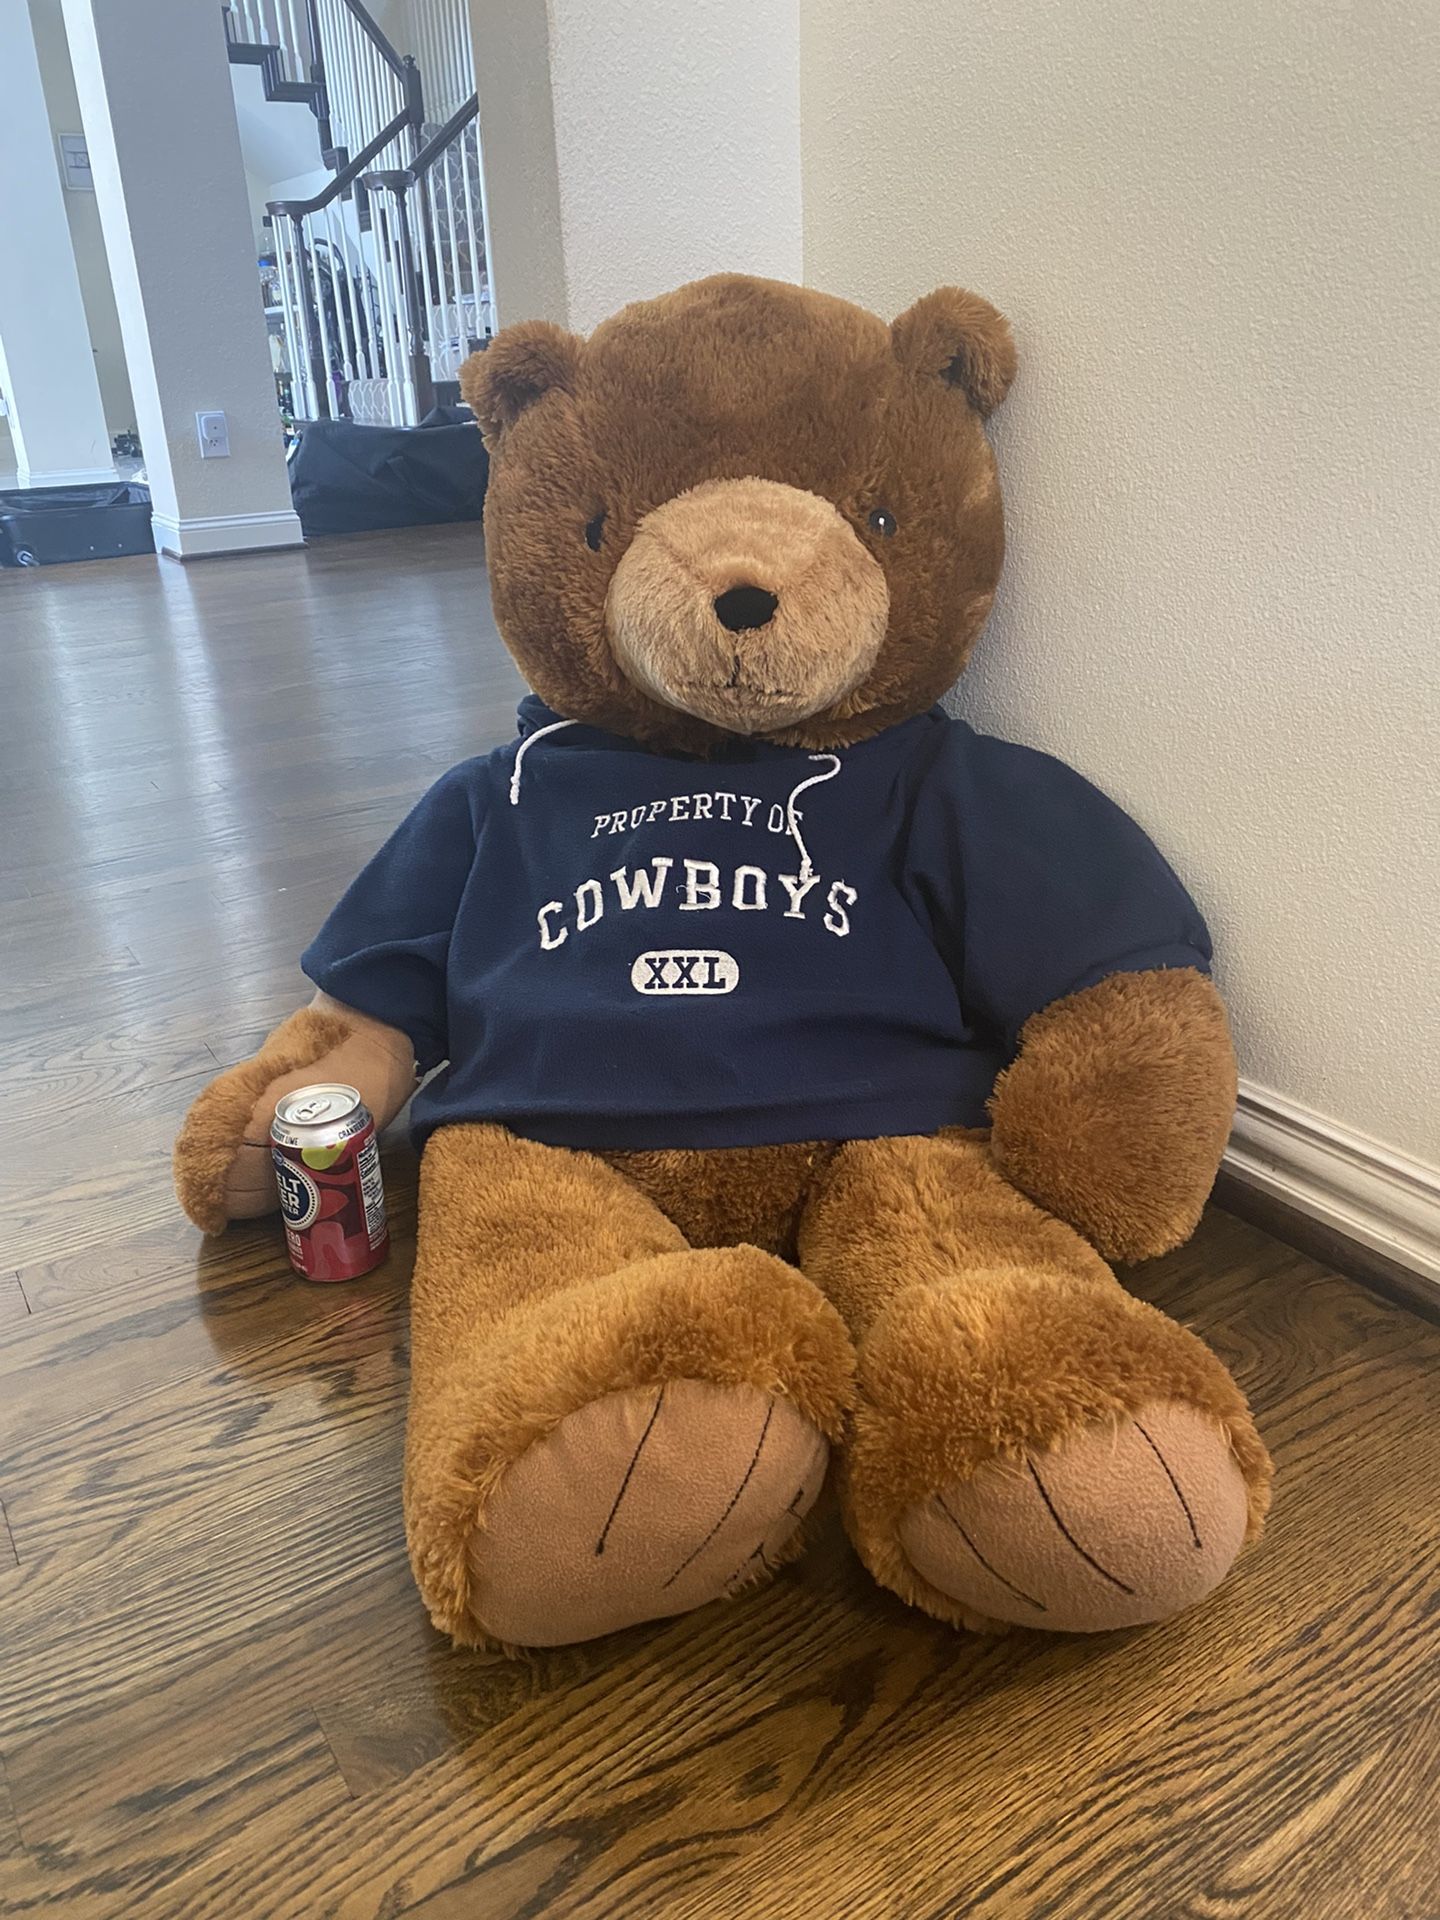 Big Cowboys Teddy Bear 